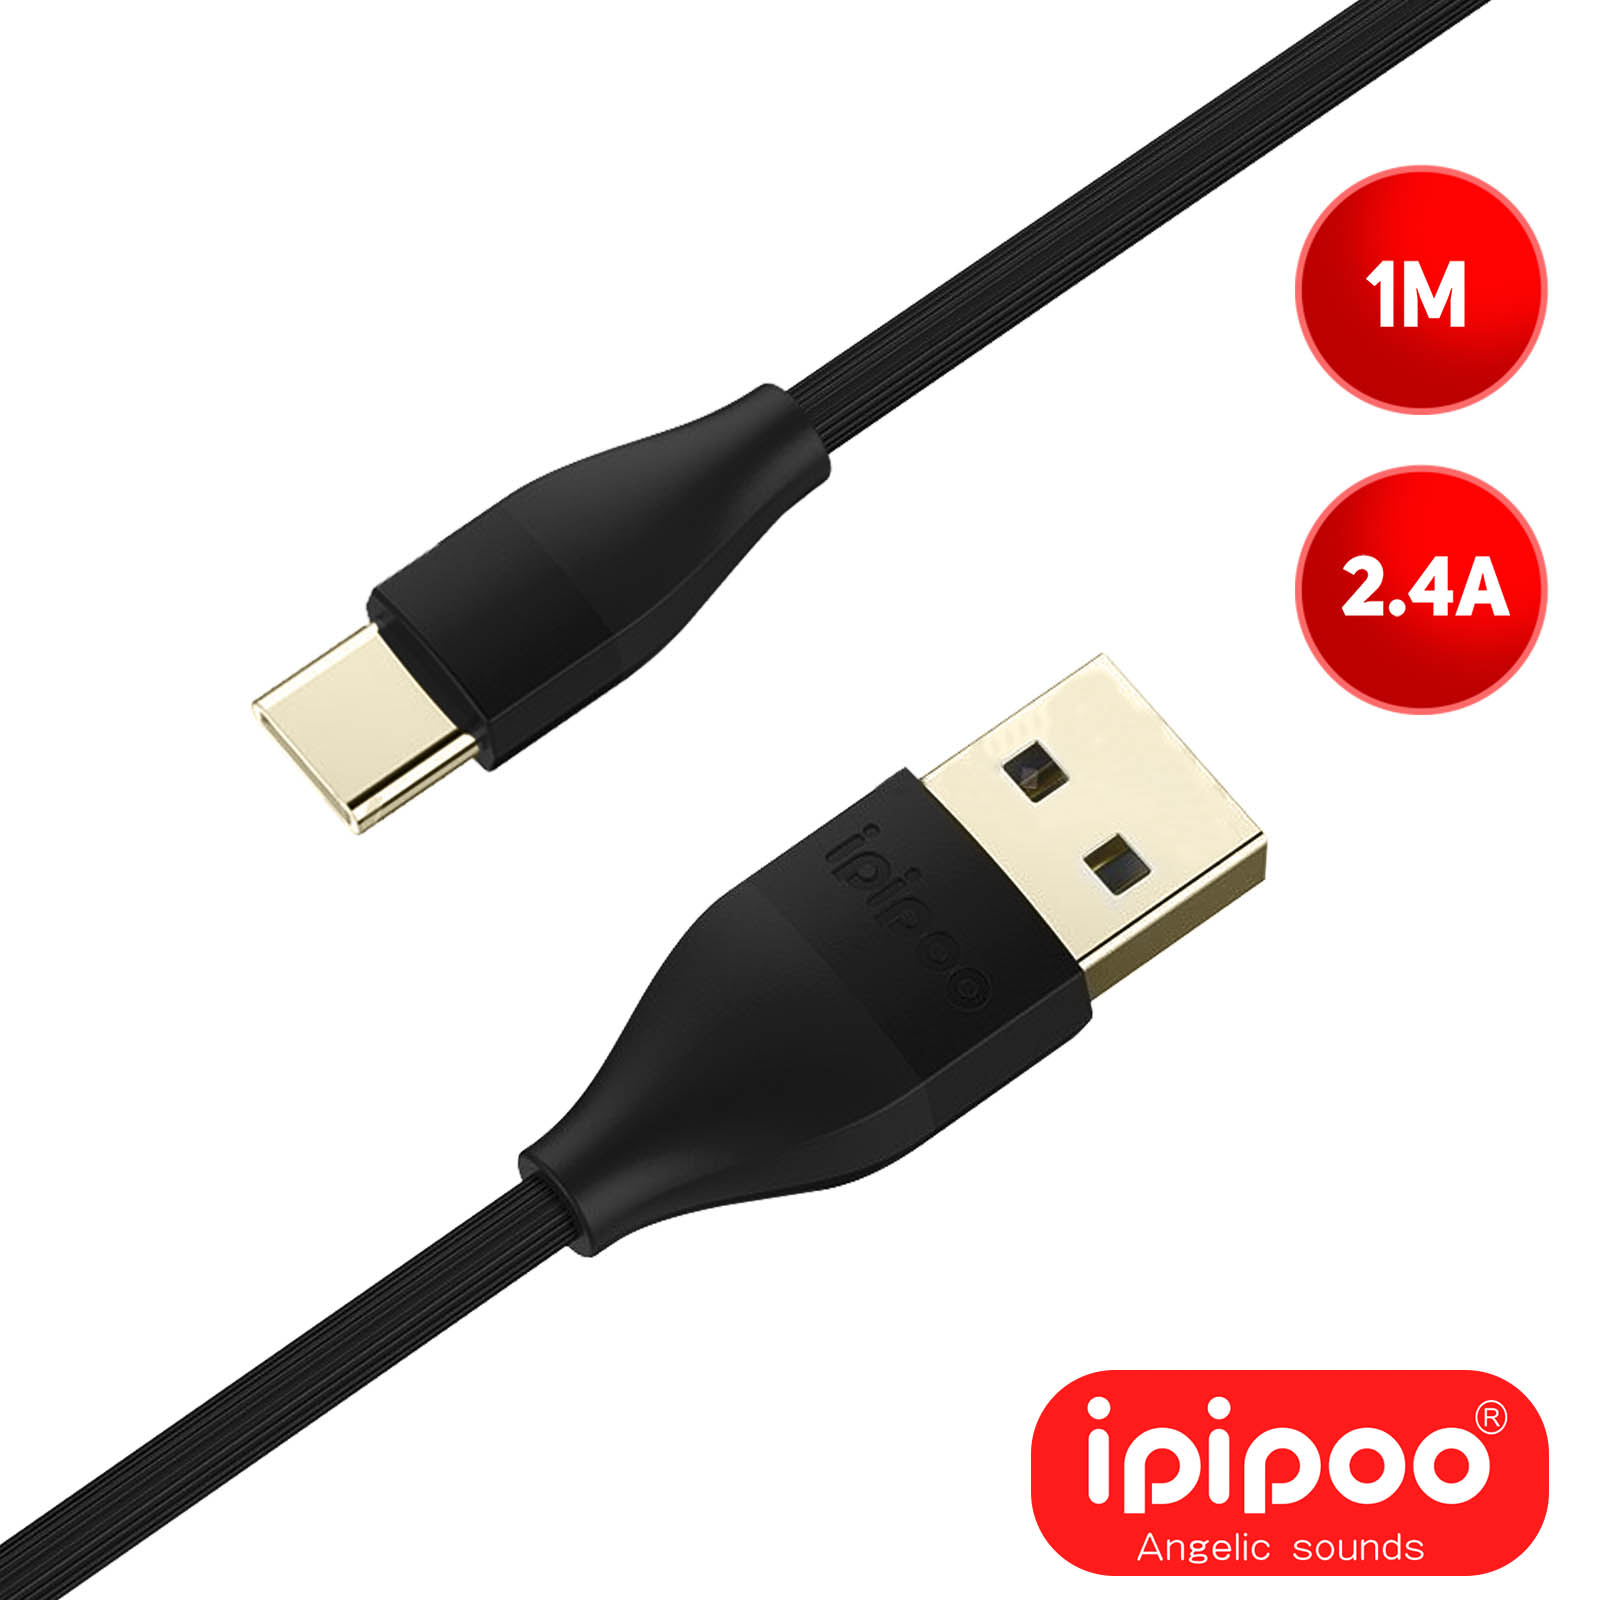 Lot 2 Cables USB-C Chargeur Blanc pour Huawei P20 LITE - Cable Type USB-C  Port USB Data Chargeur Synchronisation Transfert Donnees Mesure 1 Metre  Phonillico® - Chargeur pour téléphone mobile - Achat